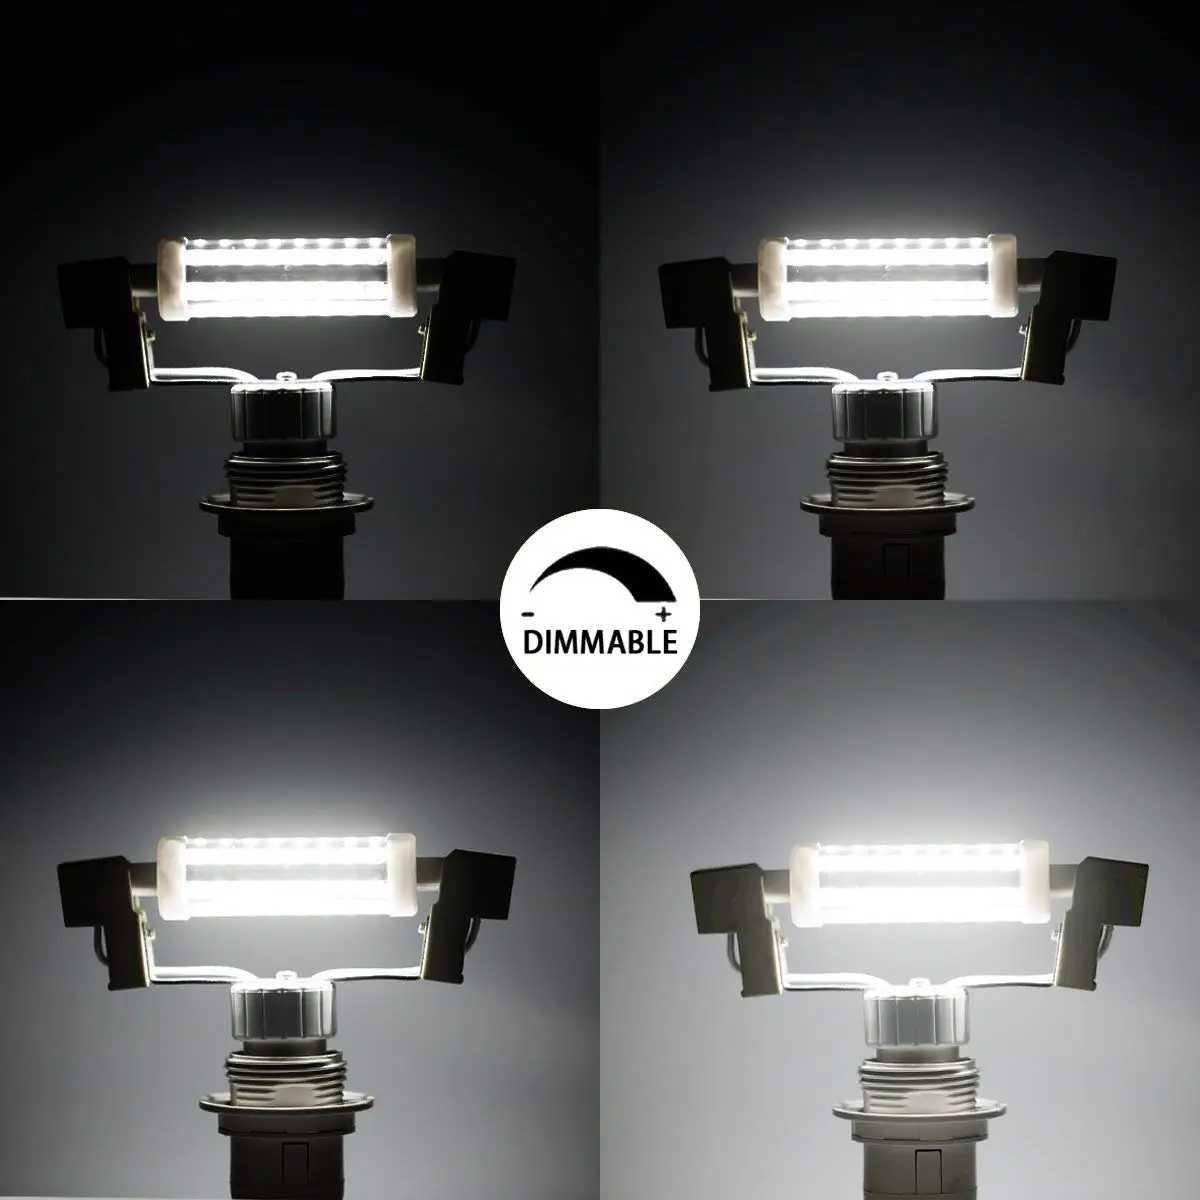 R7S светодиодный лампочка Dimmable10W лампа 3000 K/6000 K 900lm 100W эквивалент галогенной лампы переменного тока 90-240V Энергосбережение в офисе